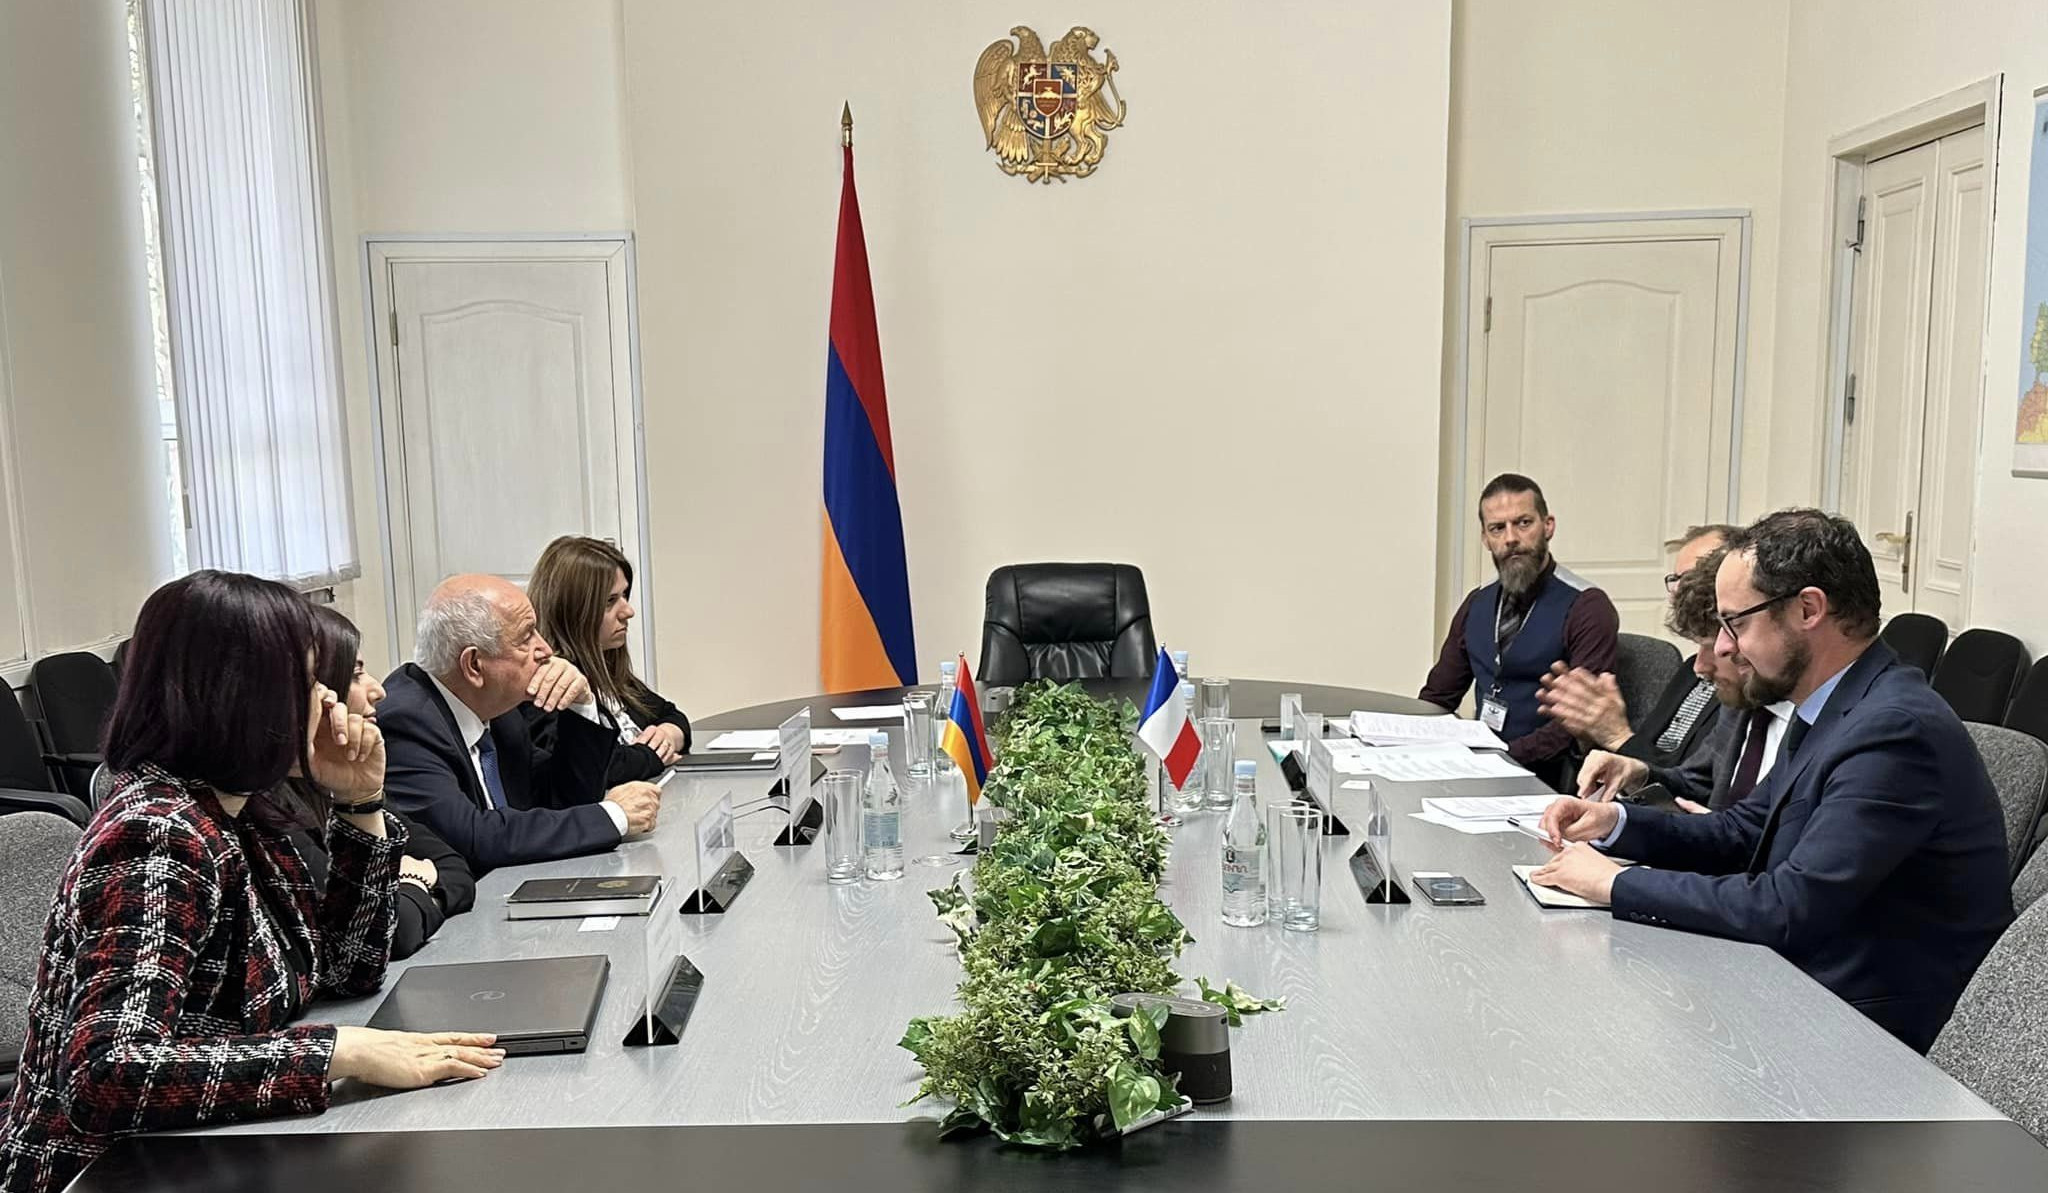 Ermənistan və Fransa mülki aviasiya sahəsində əməkdaşlığın genişləndirilməsi haqqında saziş imzalayıblar